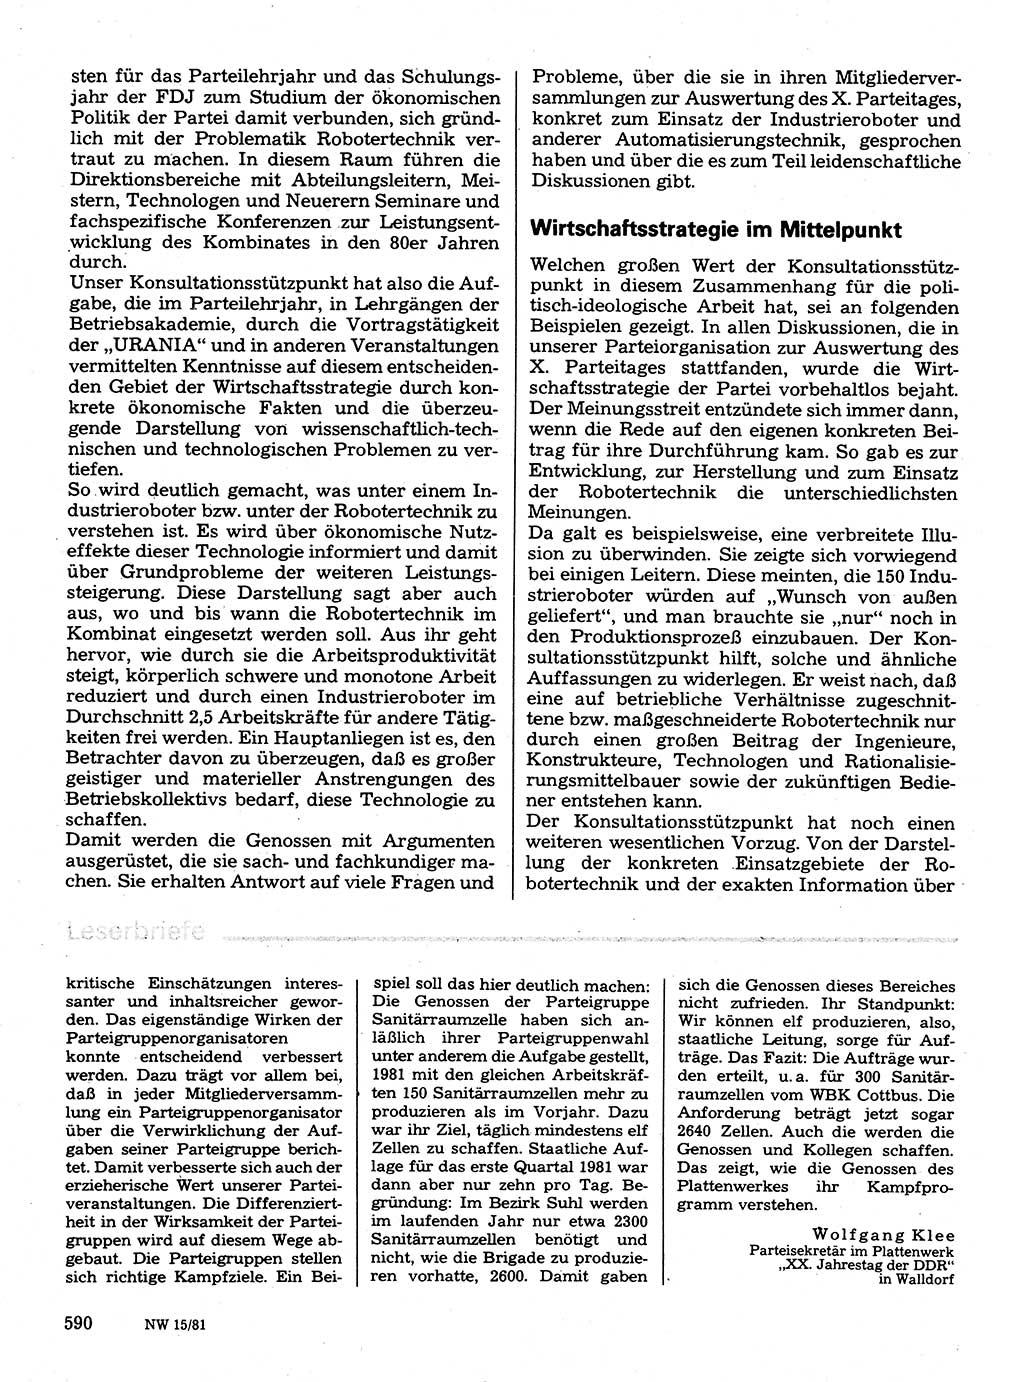 Neuer Weg (NW), Organ des Zentralkomitees (ZK) der SED (Sozialistische Einheitspartei Deutschlands) für Fragen des Parteilebens, 36. Jahrgang [Deutsche Demokratische Republik (DDR)] 1981, Seite 590 (NW ZK SED DDR 1981, S. 590)